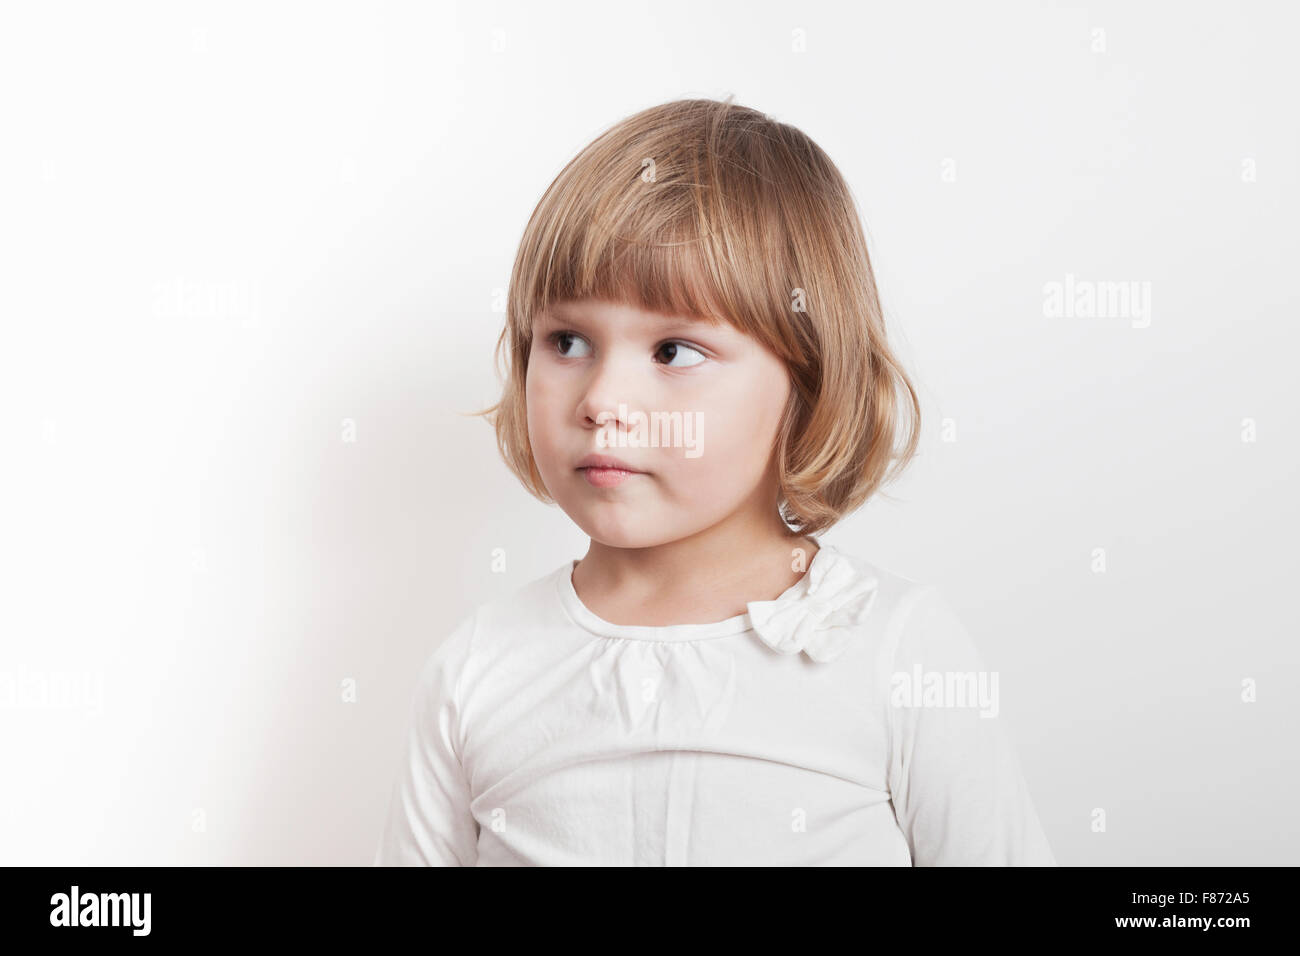 Kleine blonde kaukasische Mädchen auf weißem Hintergrund, Studioportrait Stockfoto